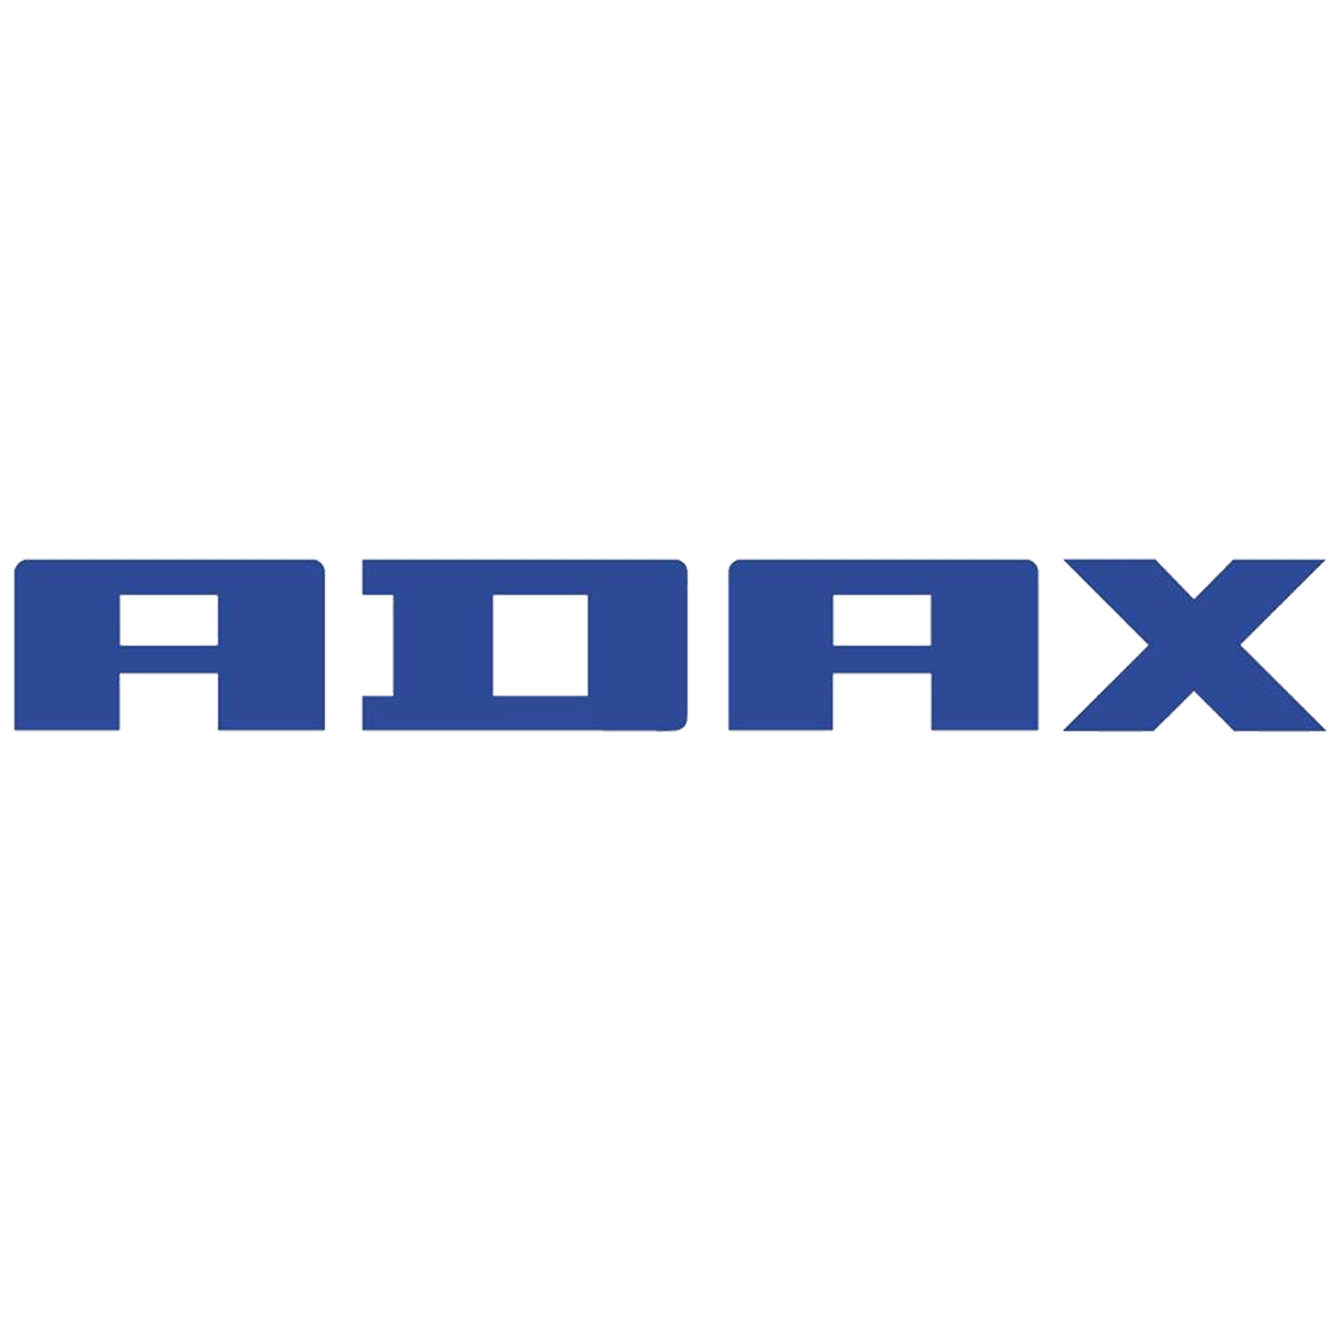 adadx